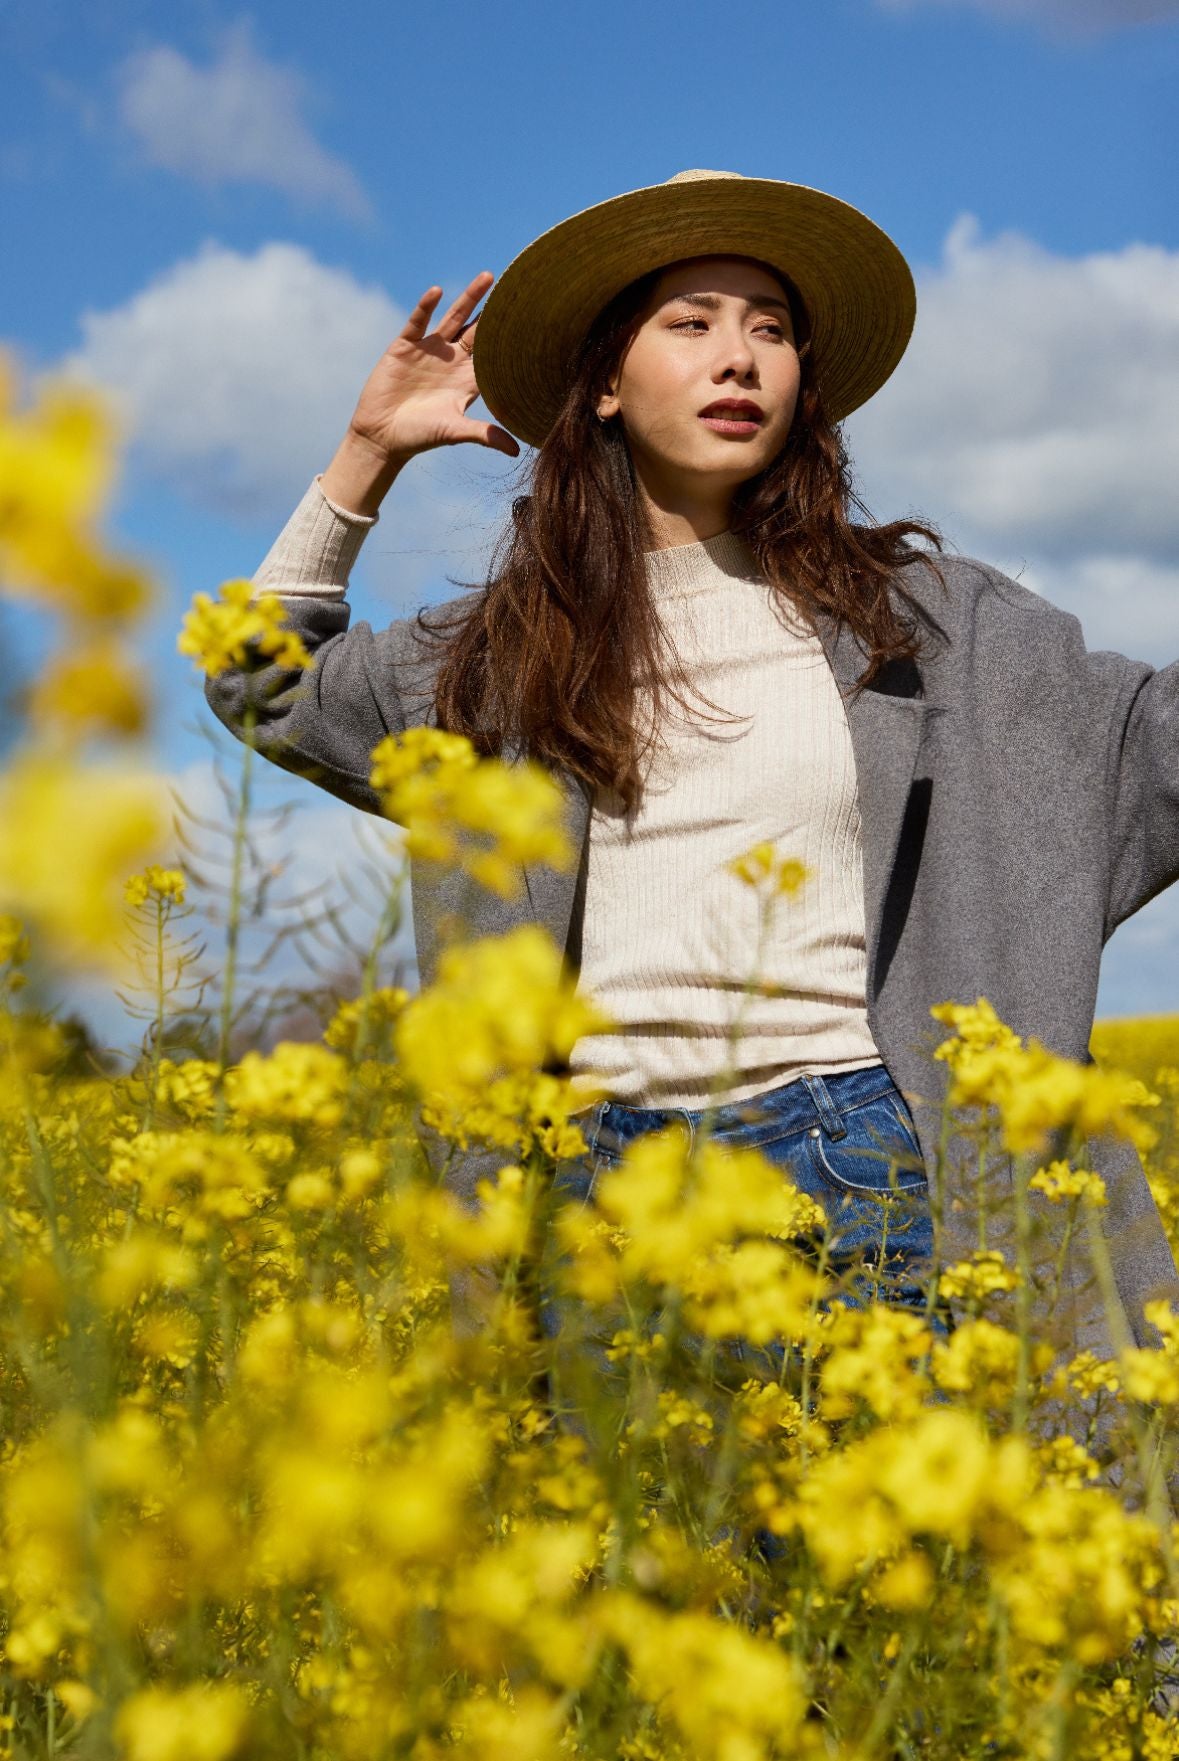 femme en chapeau et manteau se tenant dans un champ de fleurs jaunes.